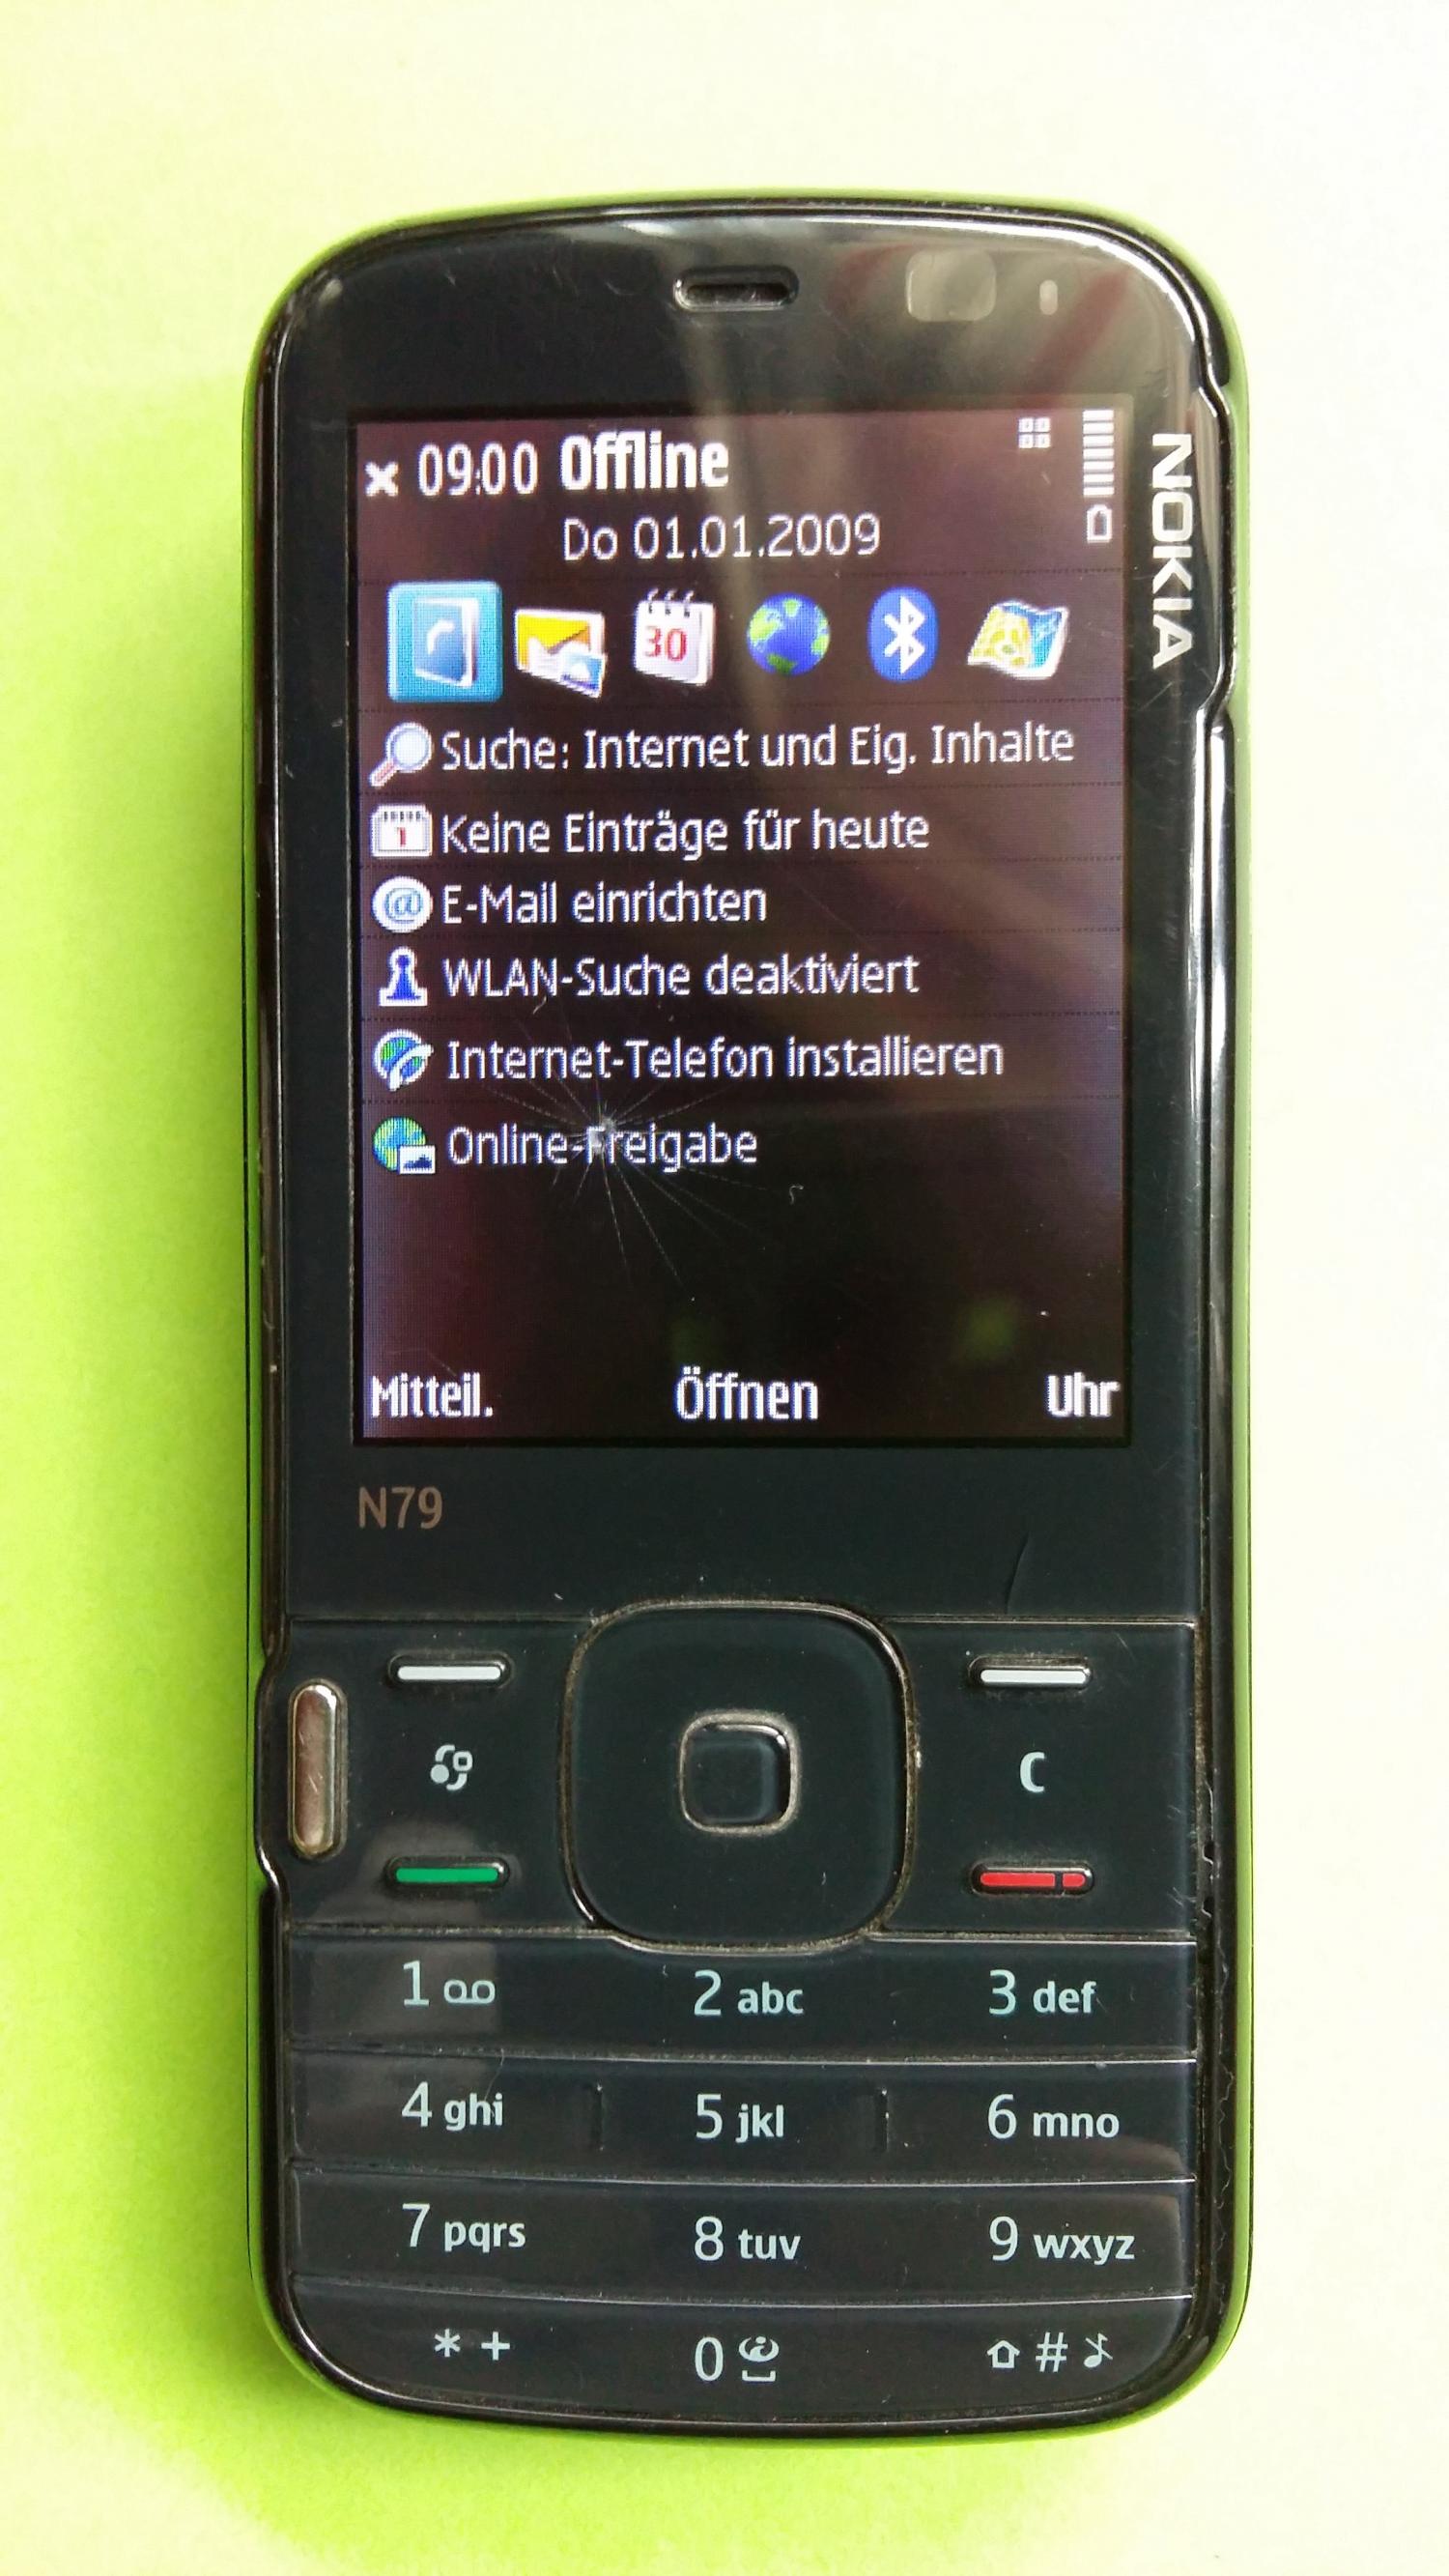 image-7308677-Nokia N79-1 (1)1.jpg